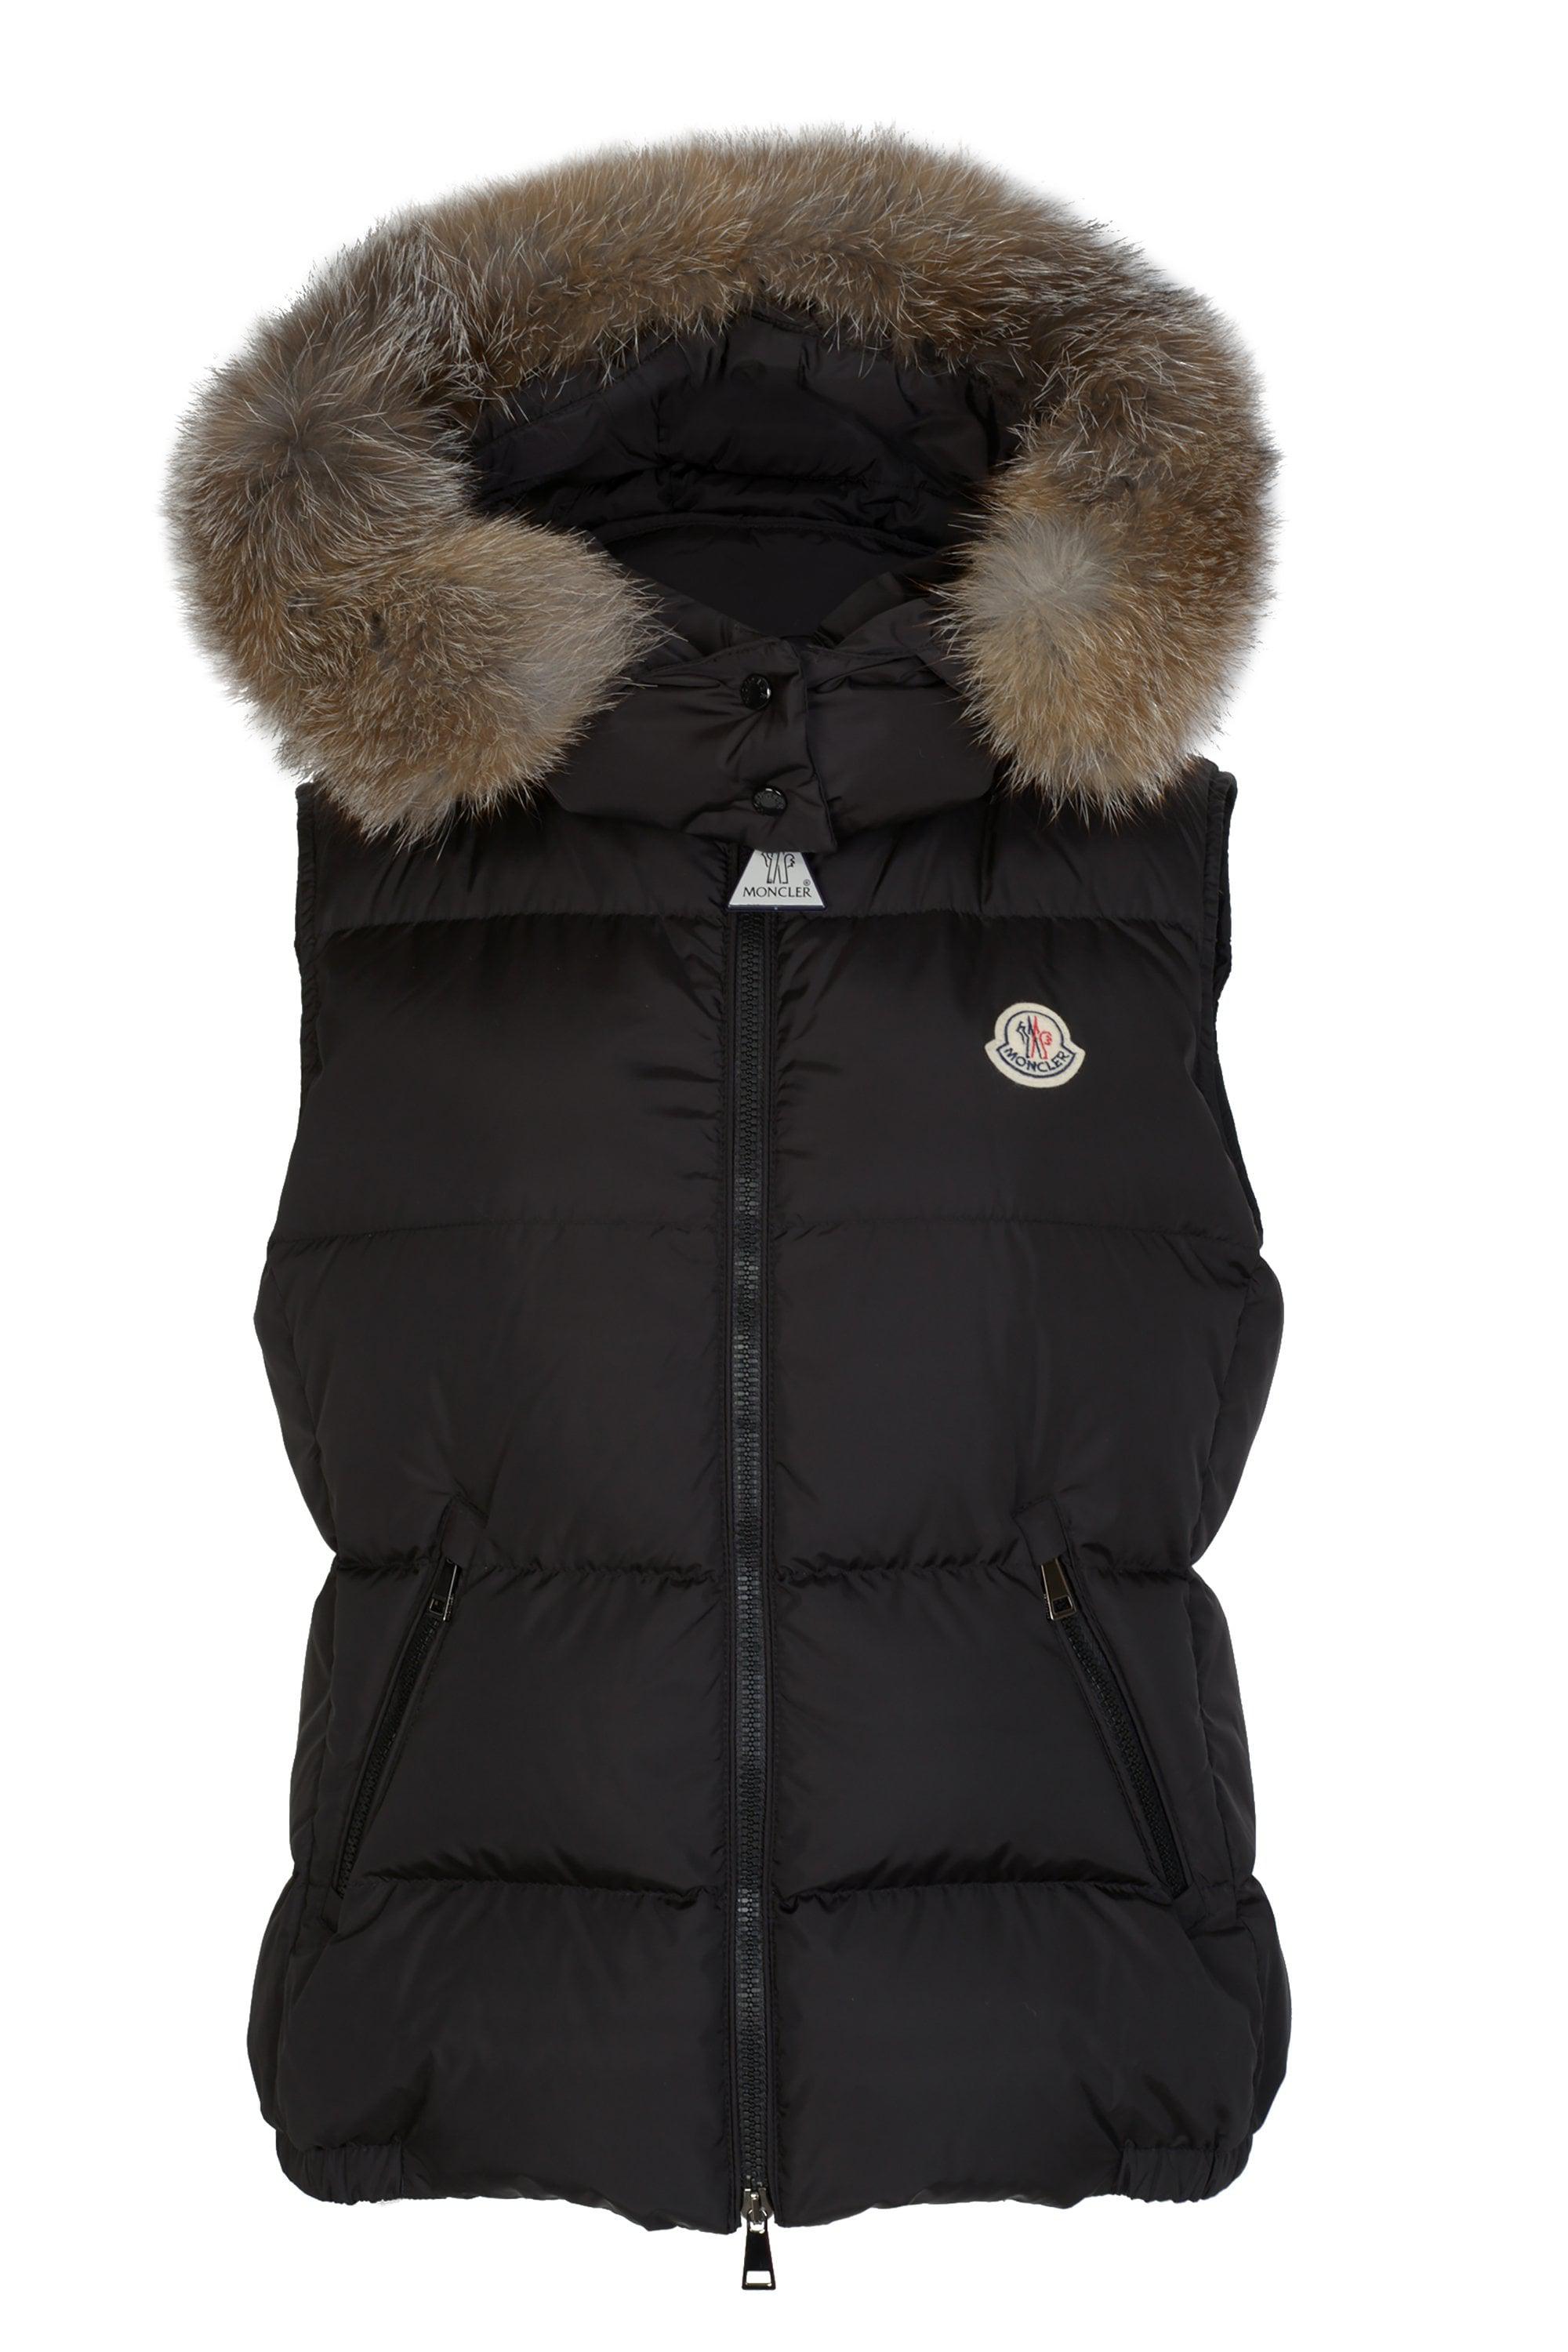 Moncler Body Warmer Fur Hood Sale, SAVE 54% - eagleflair.com